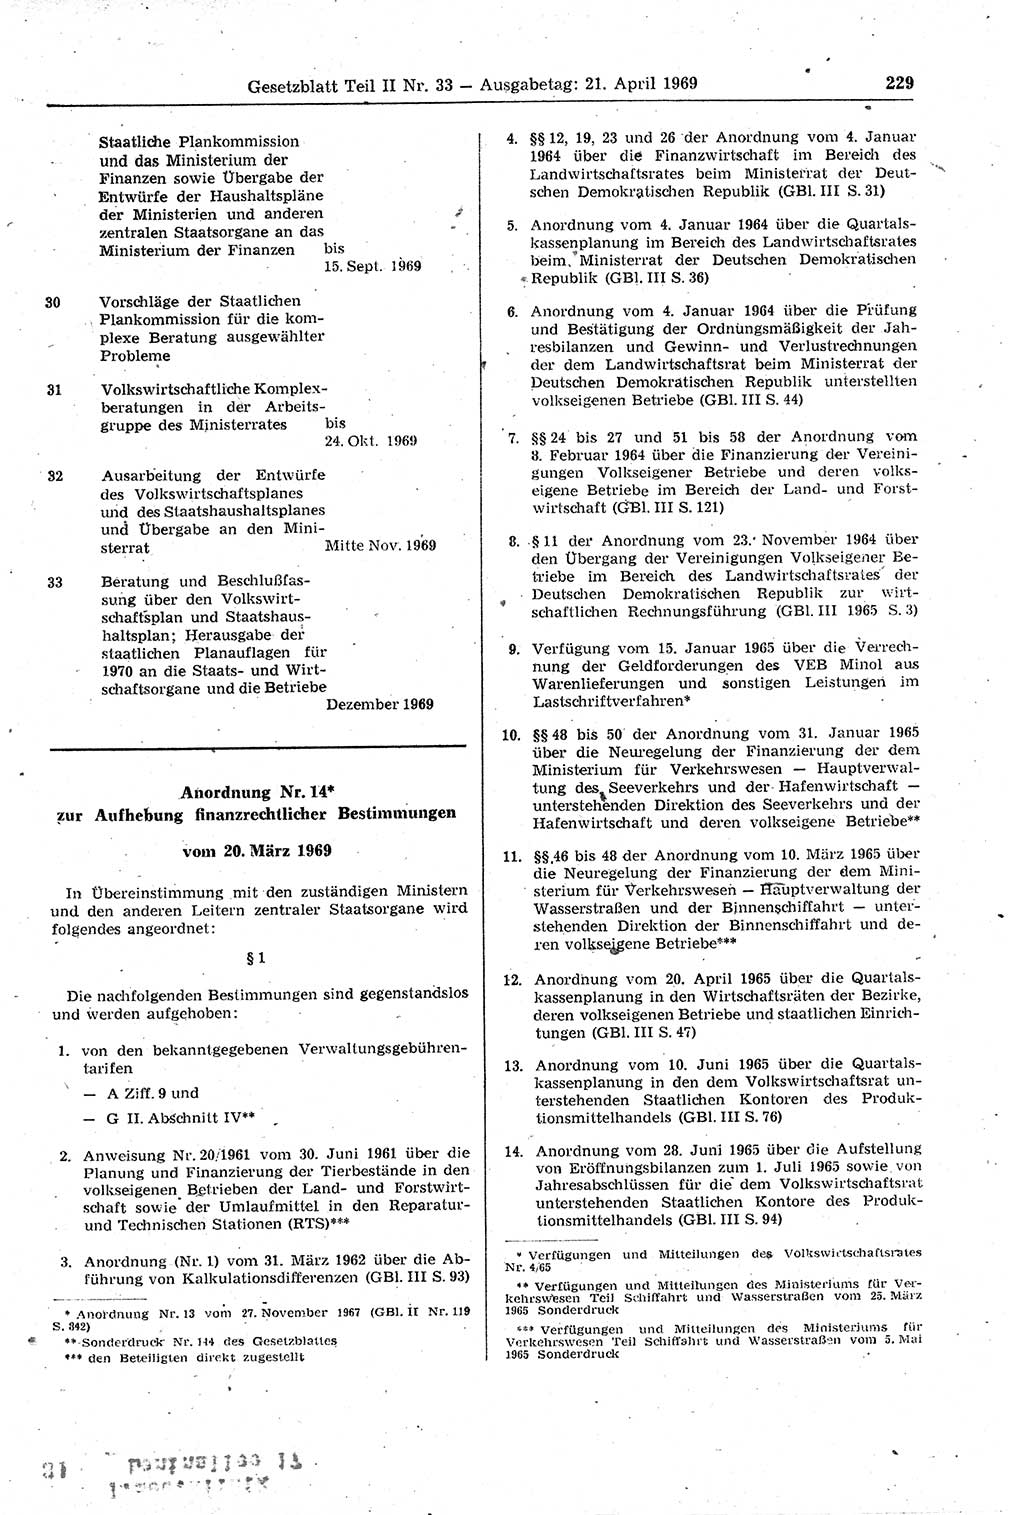 Gesetzblatt (GBl.) der Deutschen Demokratischen Republik (DDR) Teil ⅠⅠ 1969, Seite 229 (GBl. DDR ⅠⅠ 1969, S. 229)